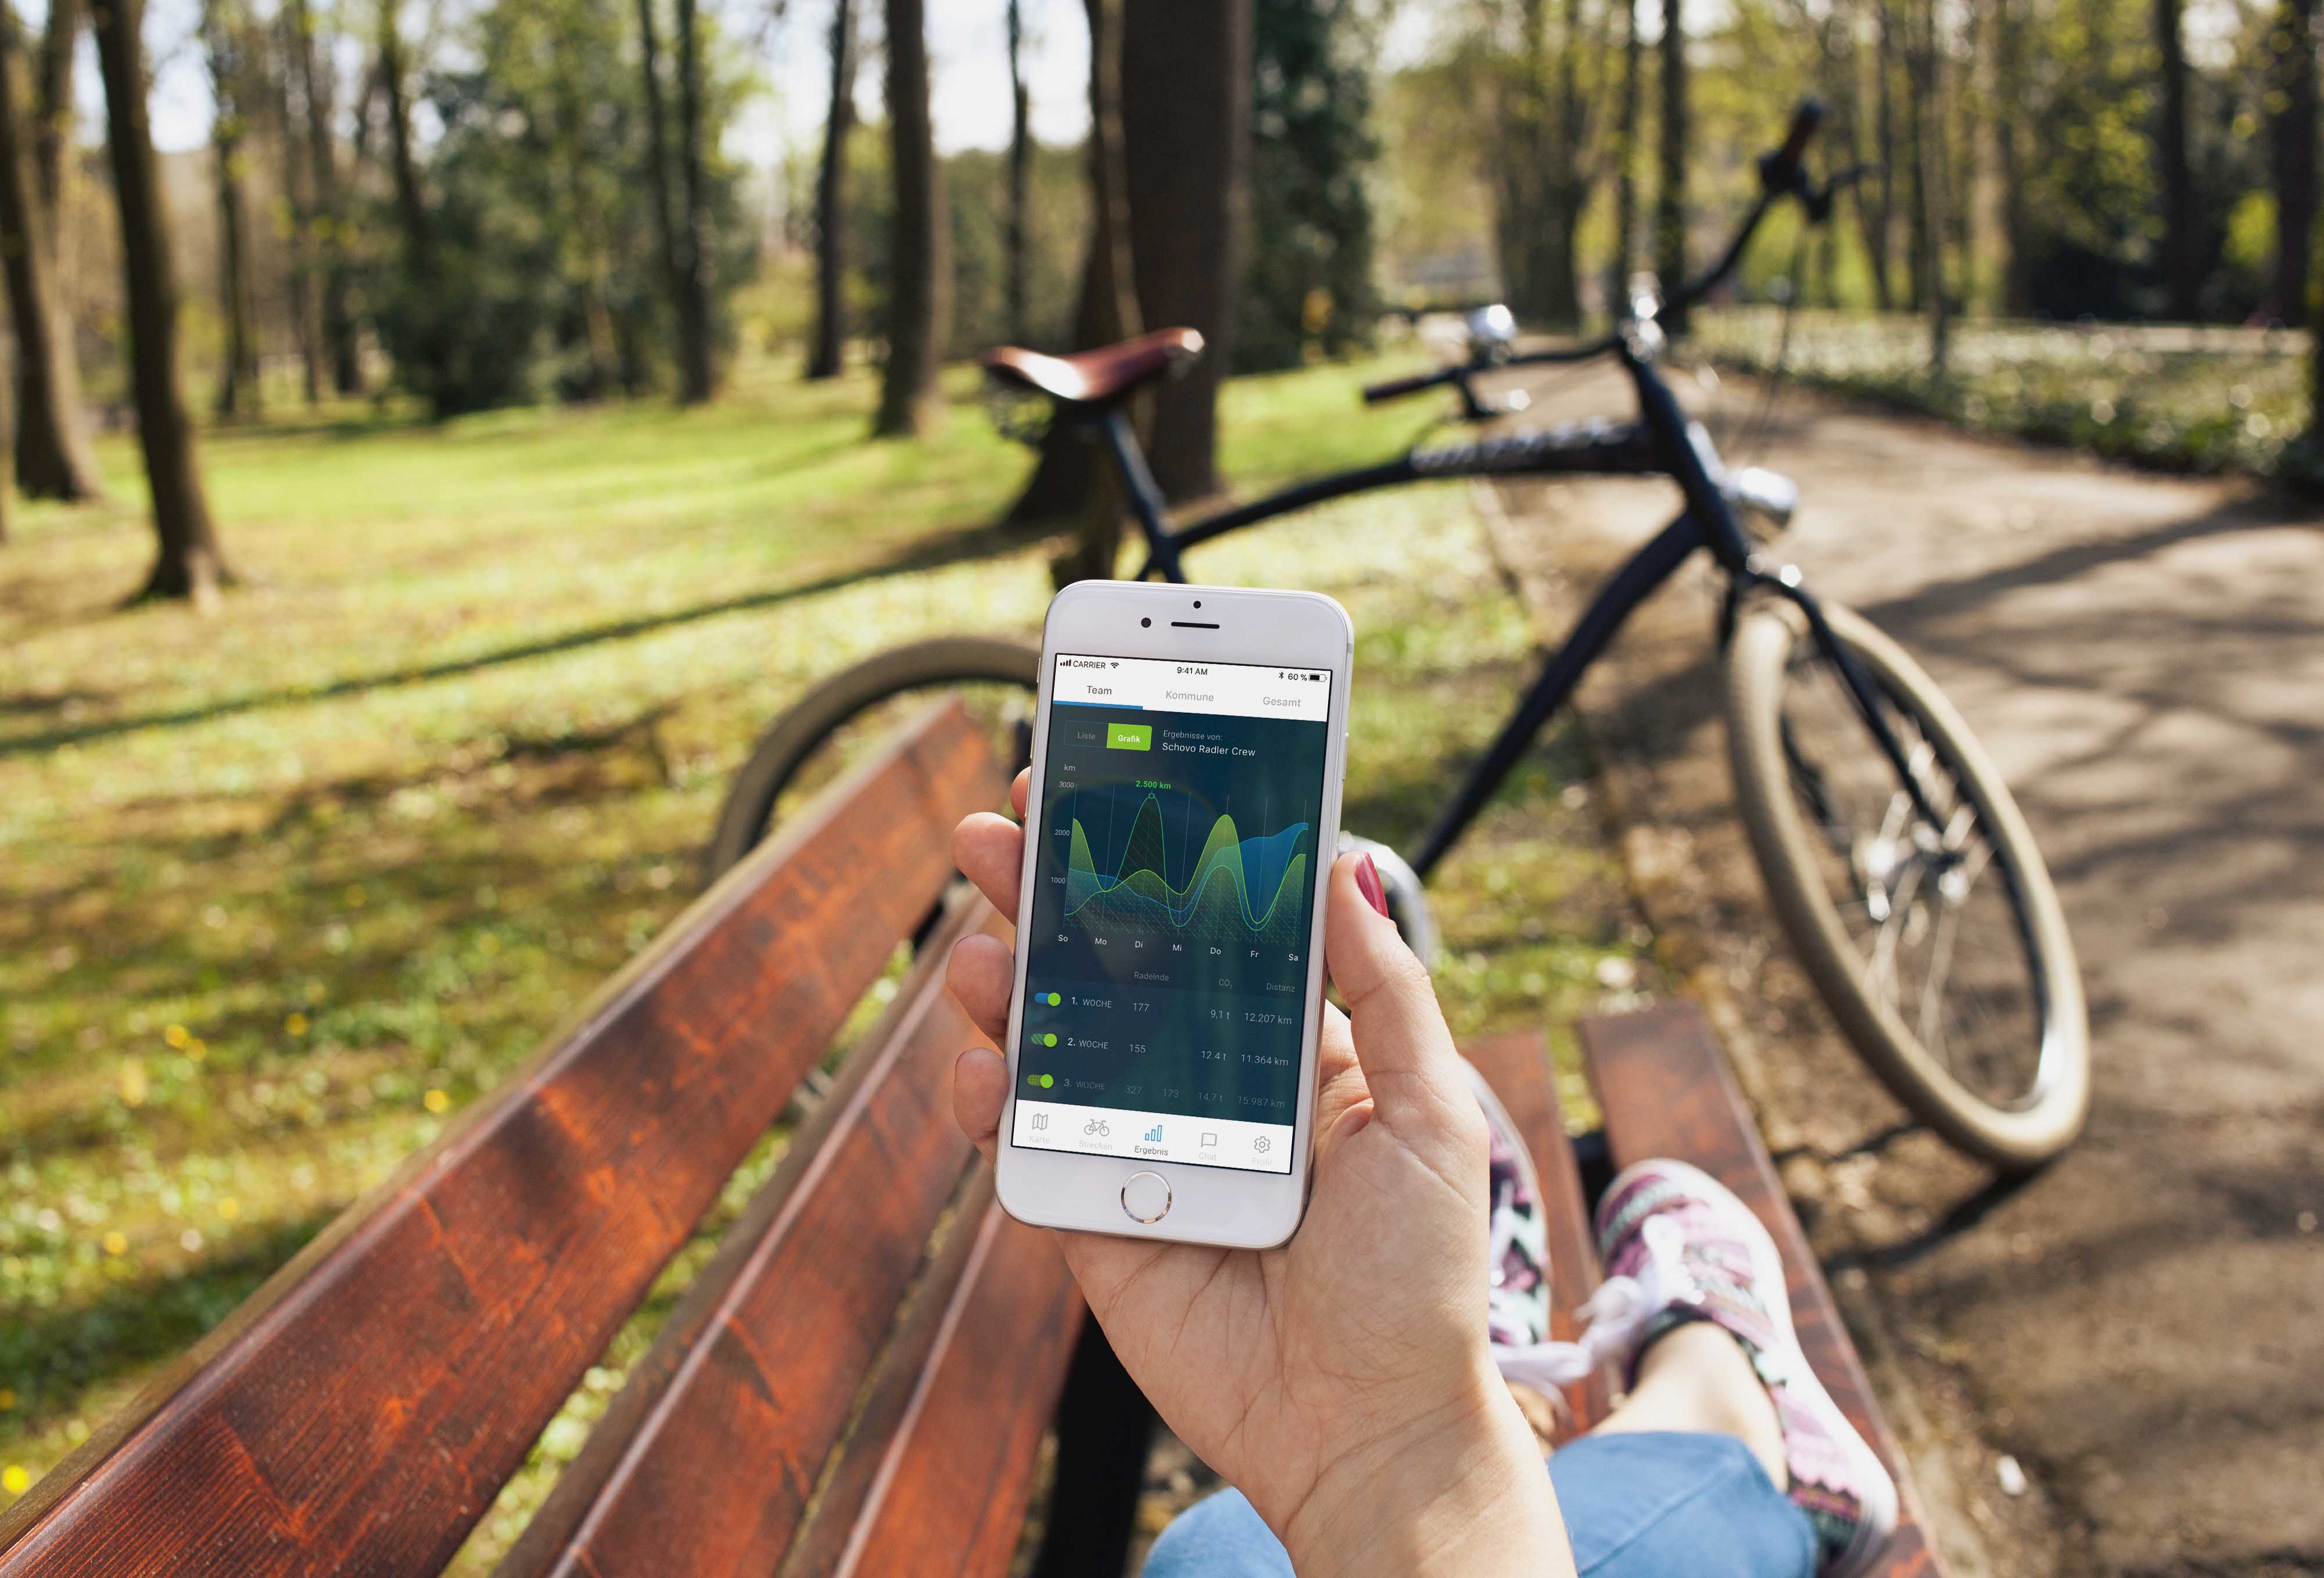 Hand mit Handy und Beine eines Menschen, der auf einer Bank sitzt, im Hintergrund ein Fahrrad und Bäume